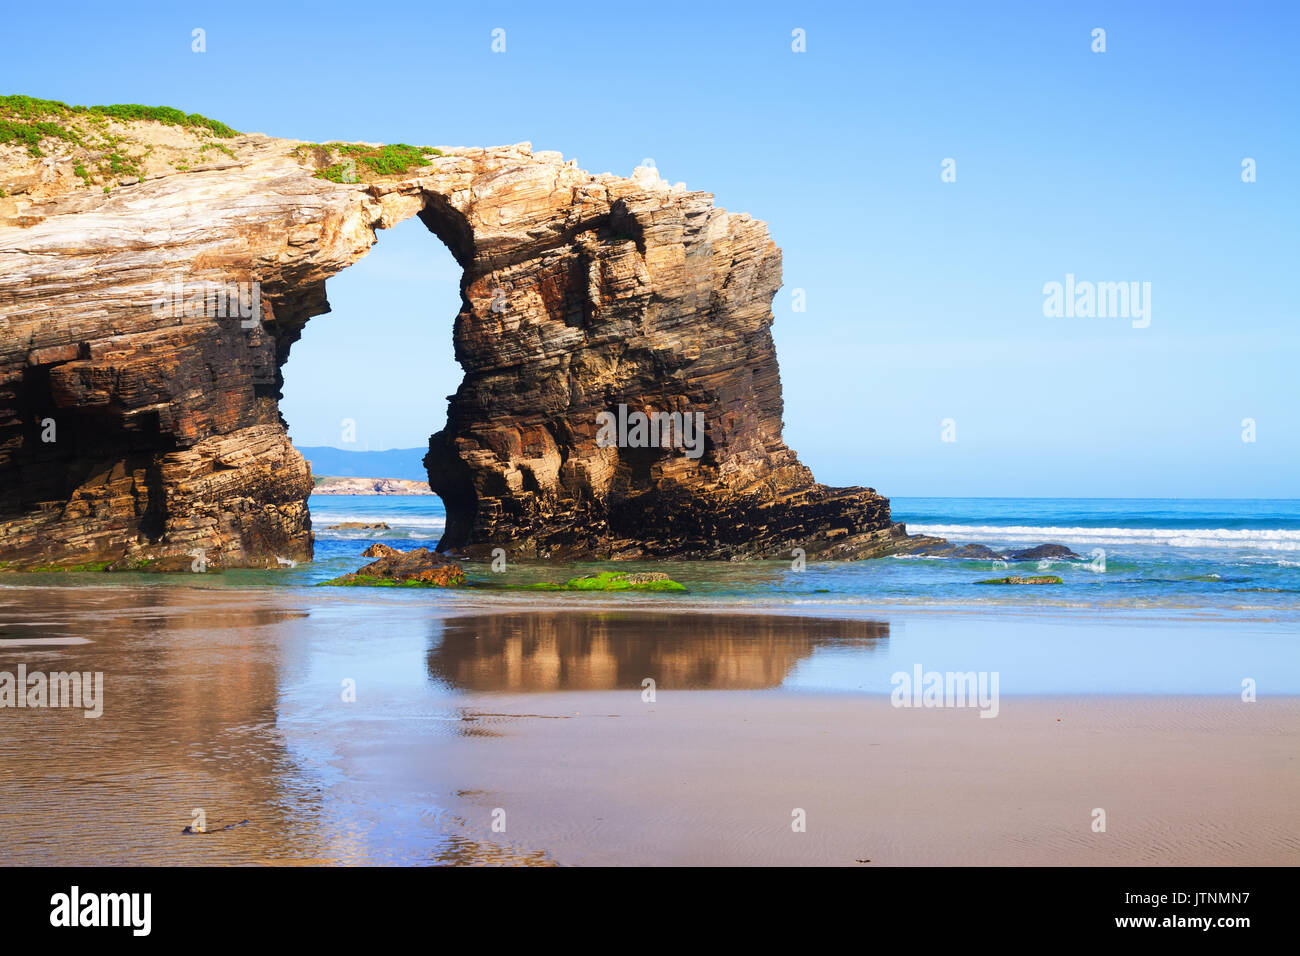 Arco Naturale a come Catedrais beach - è il nome turistico di Praia de Augas Santas (Spiaggia di Santo acque). Galizia Foto Stock